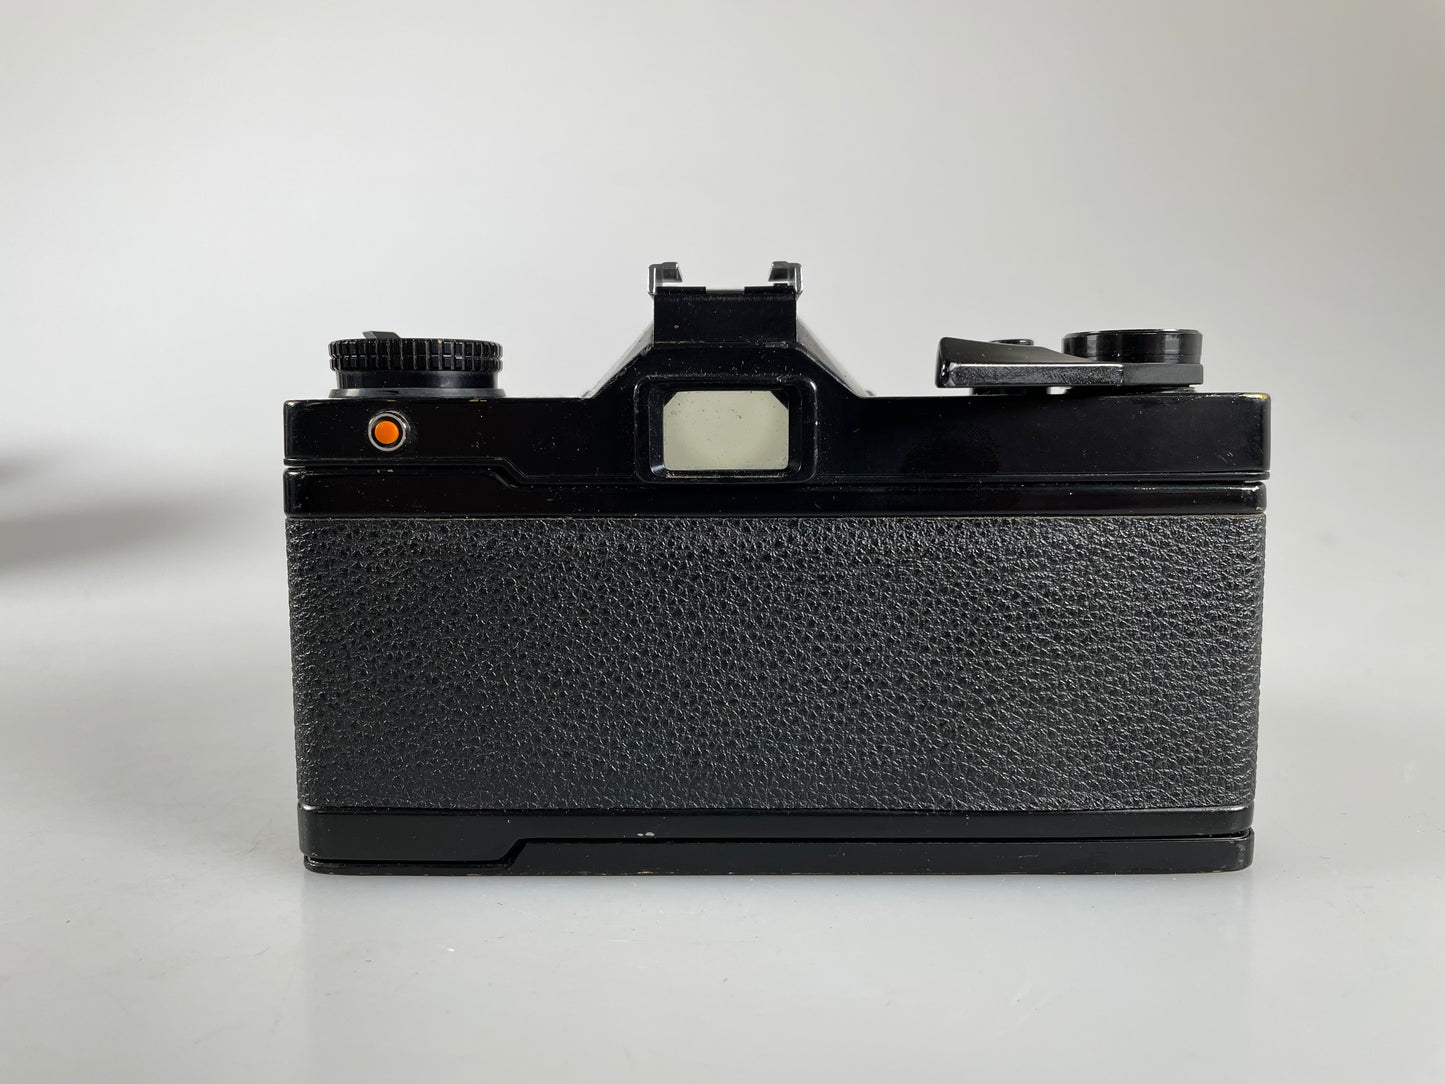 Mamiya NC1000 camera with 50mm f1.7 CS lens kit